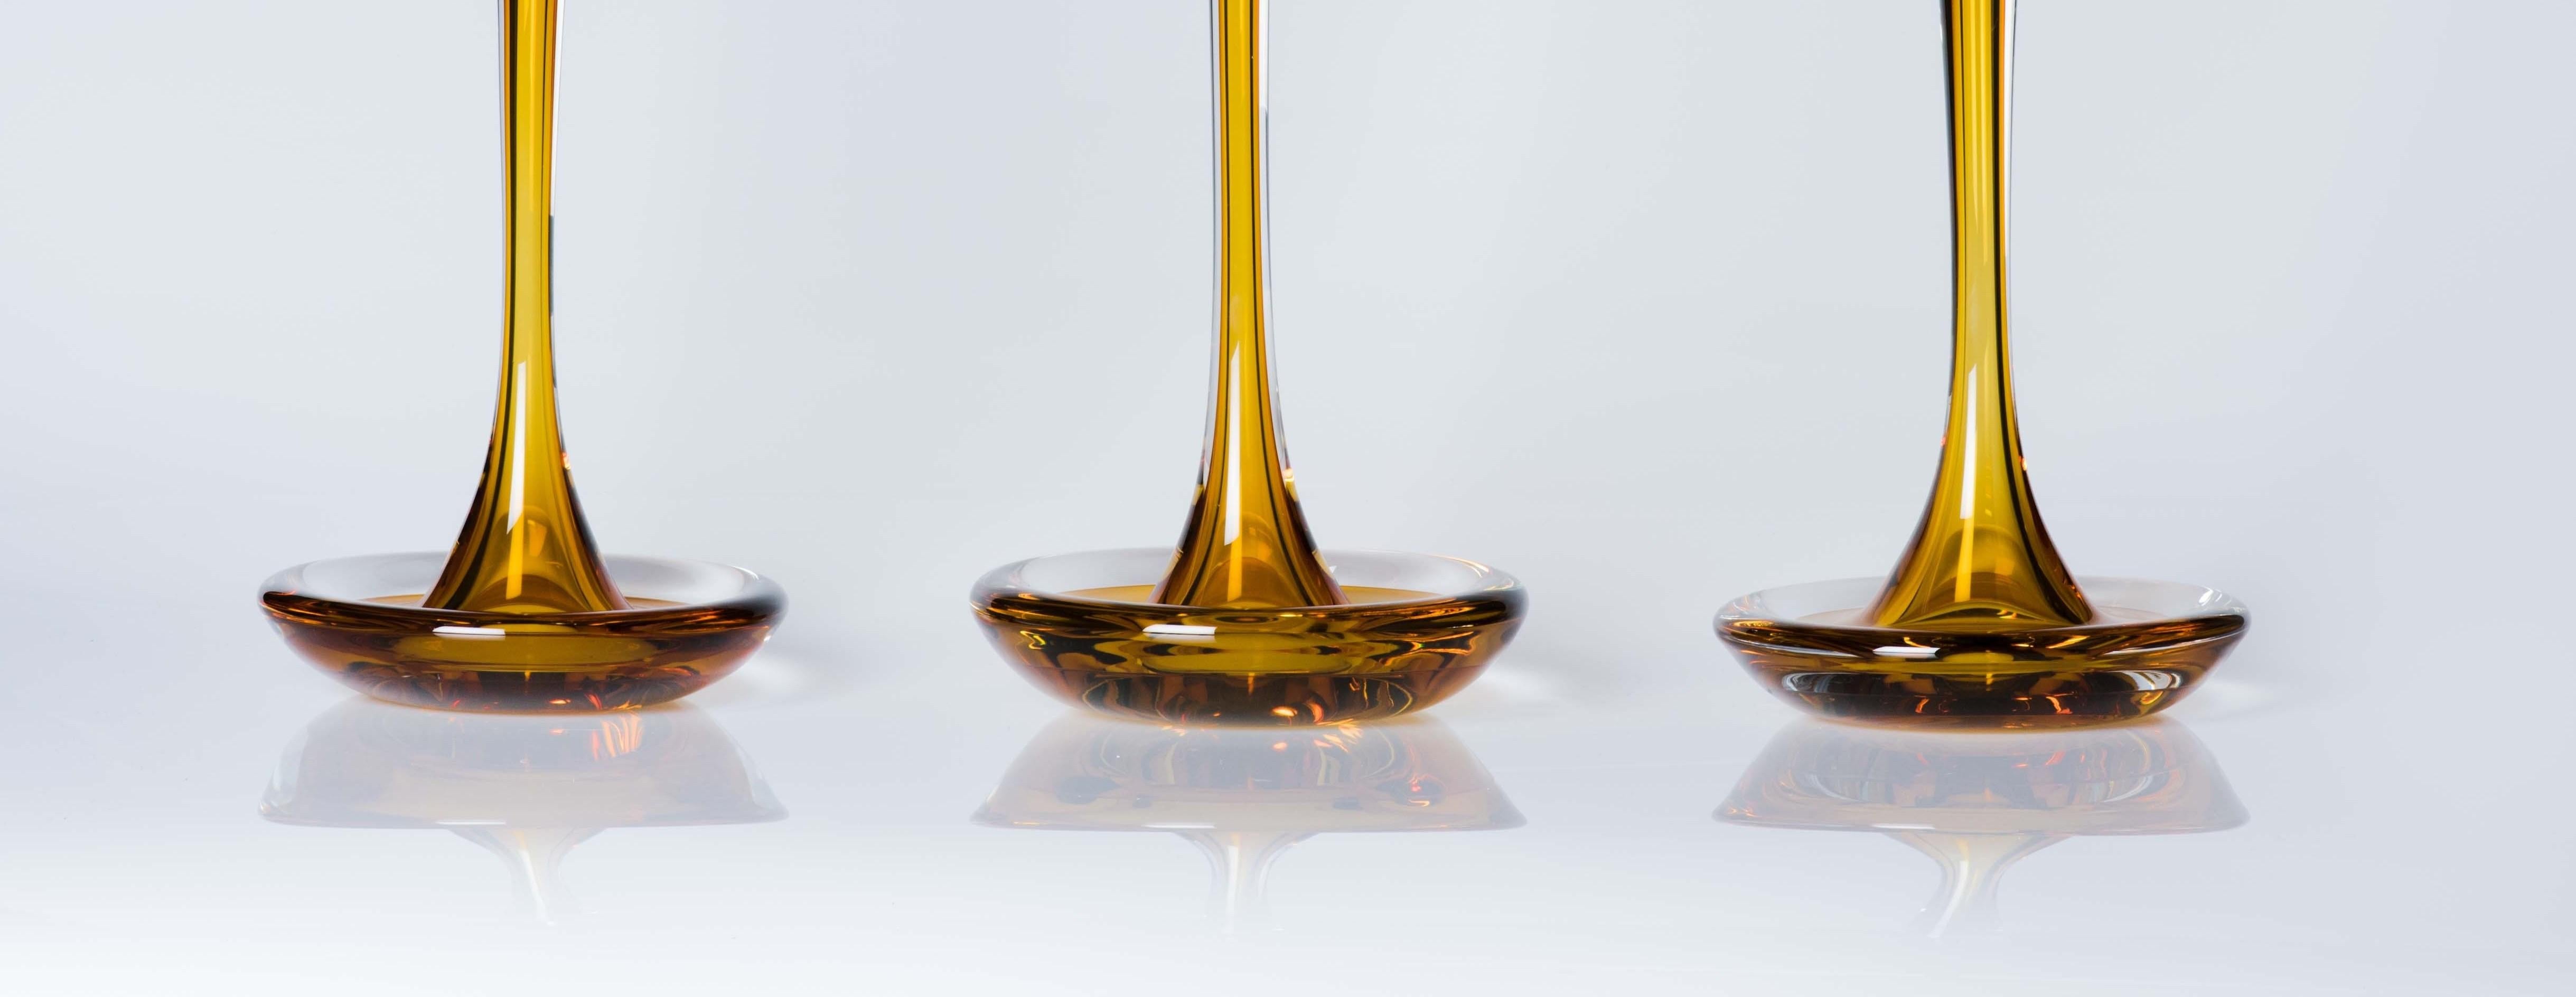 Modern Moshe Bursuker Set of 3 Amber Glass Candleholders, 2020